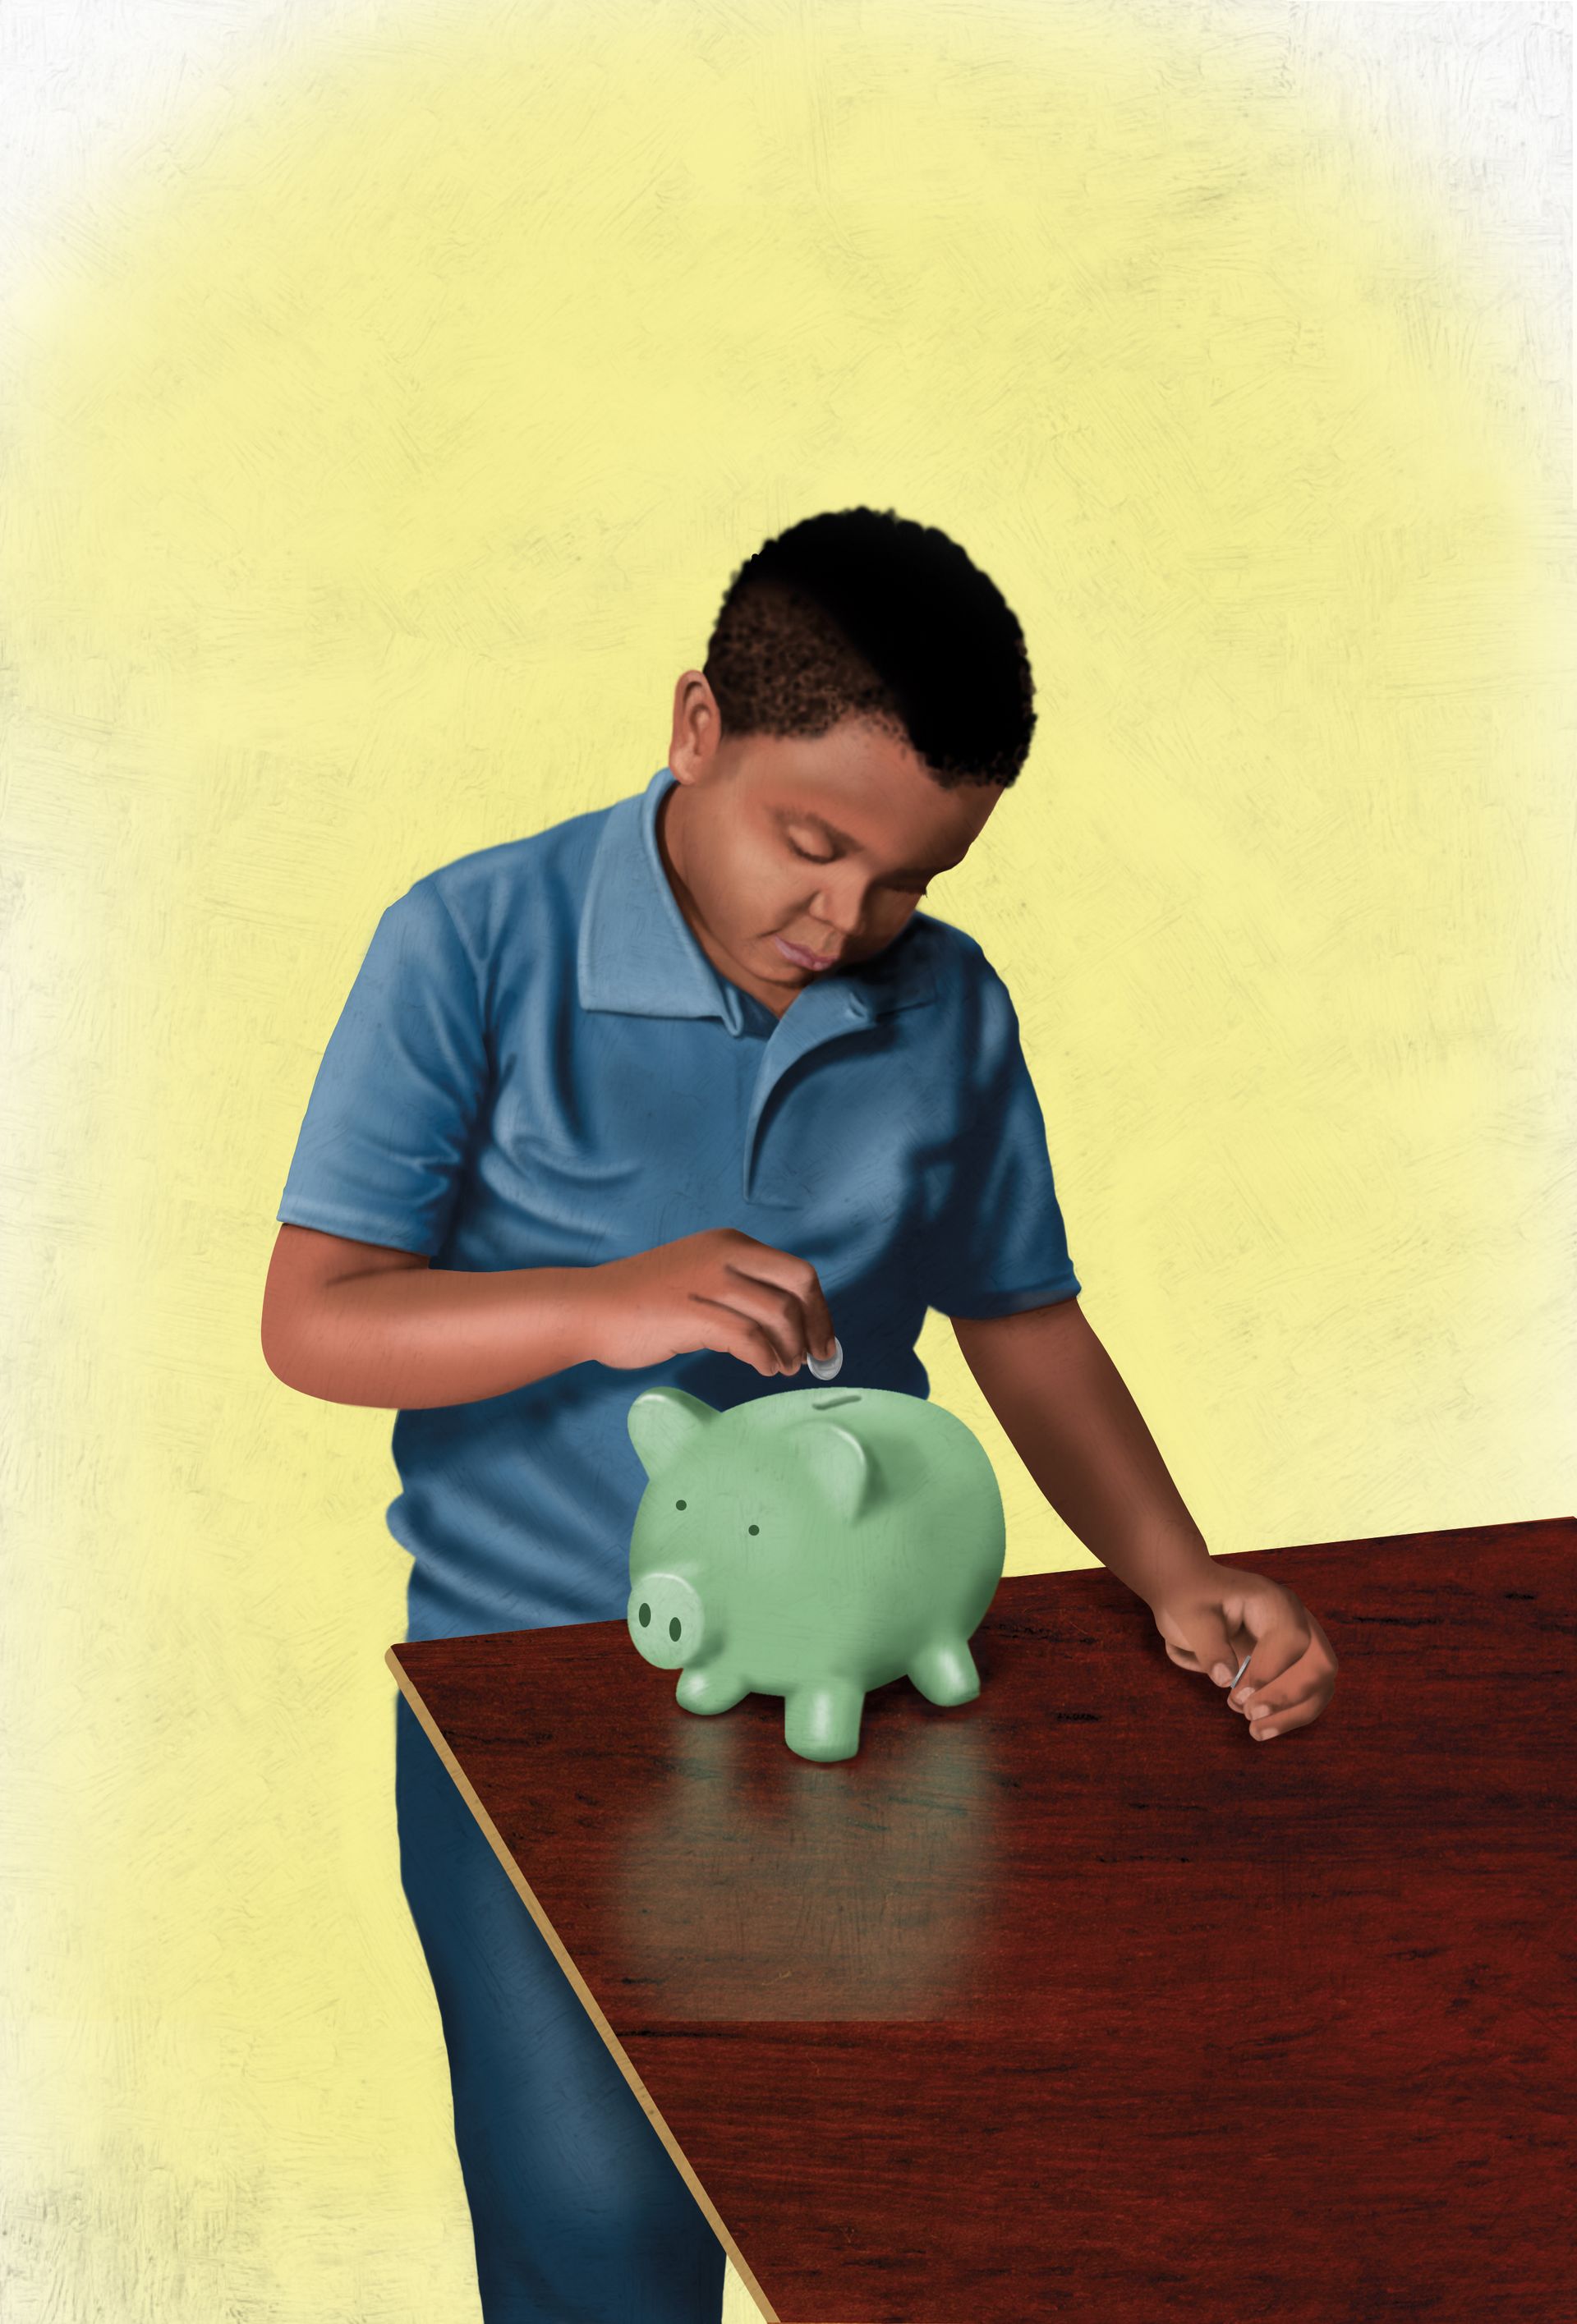 A boy puts money in a piggy bank.